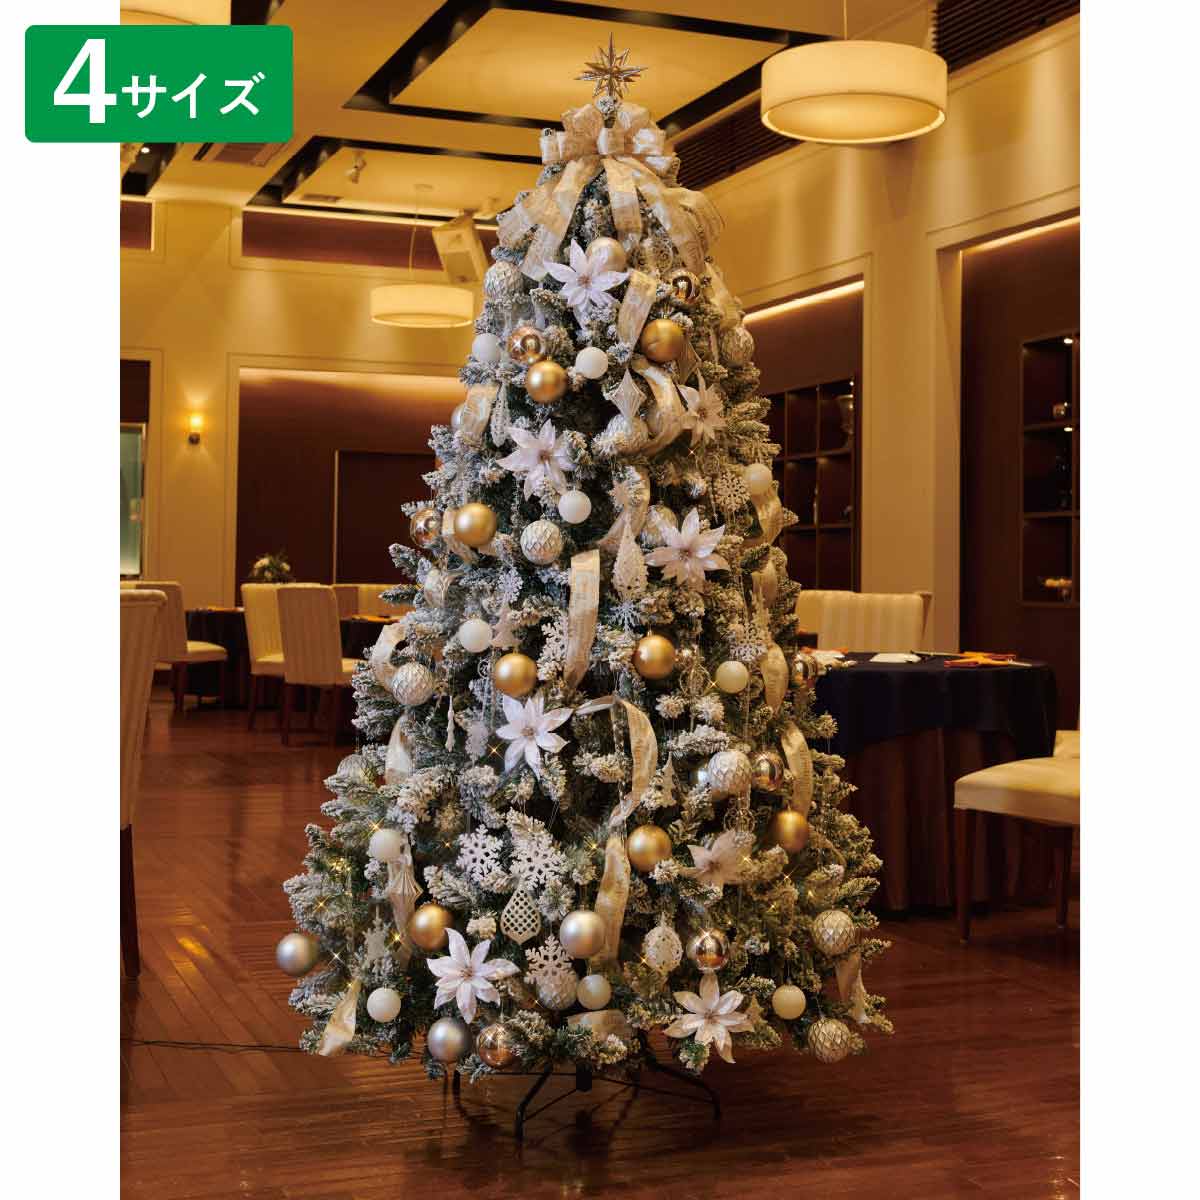 240cmクリスマスツリー(ホワイトツリー) - 1